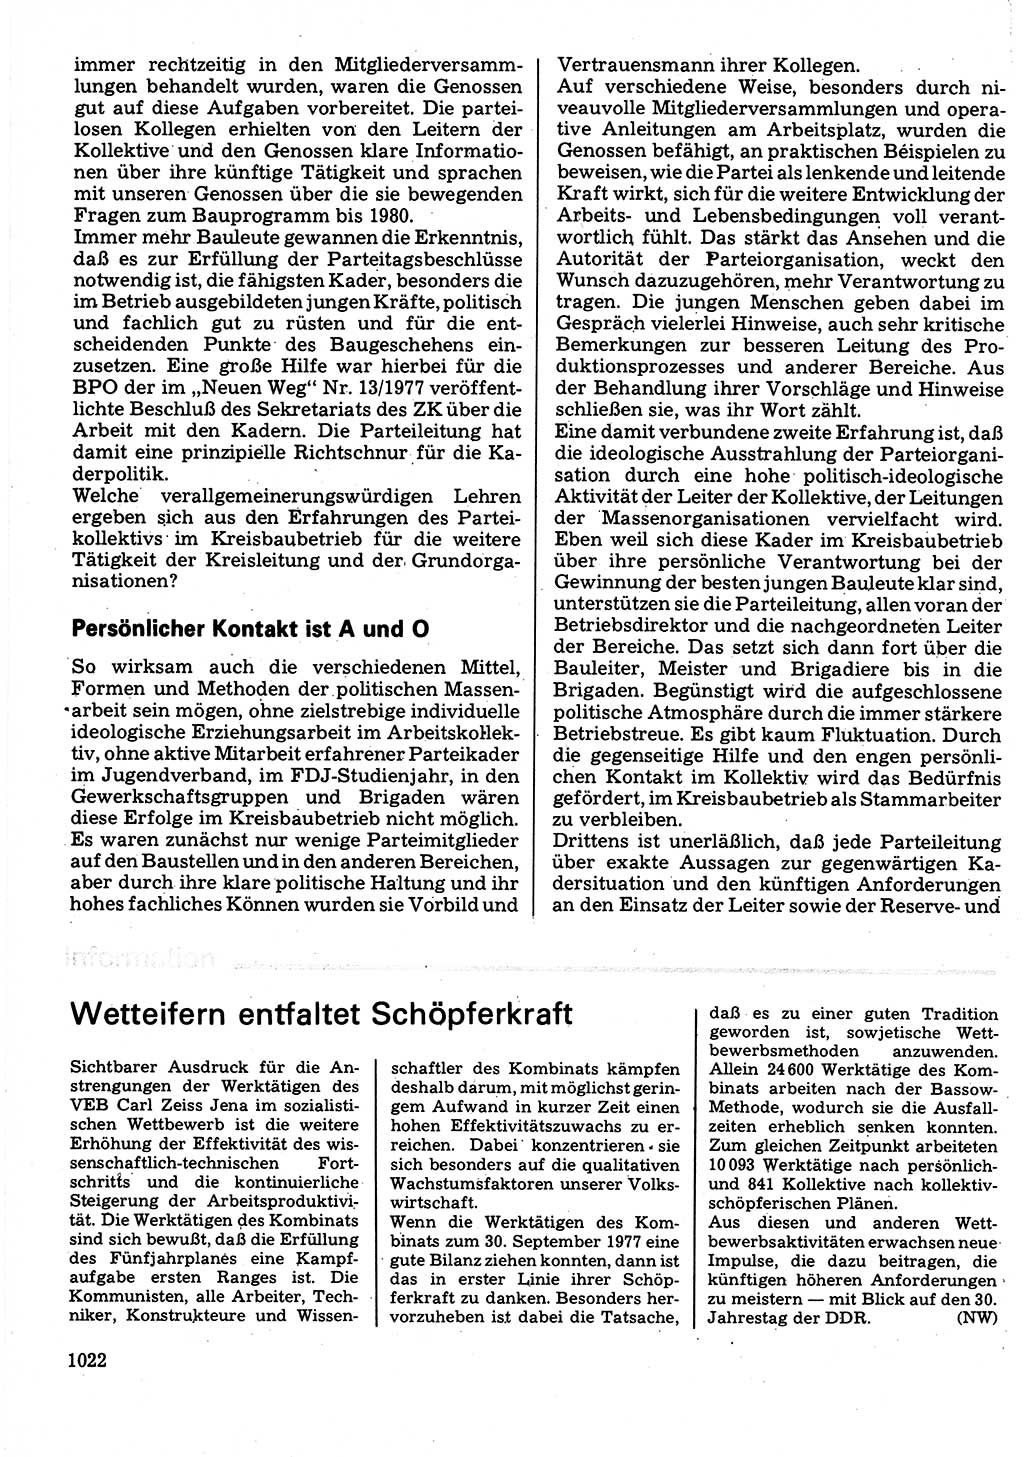 Neuer Weg (NW), Organ des Zentralkomitees (ZK) der SED (Sozialistische Einheitspartei Deutschlands) für Fragen des Parteilebens, 32. Jahrgang [Deutsche Demokratische Republik (DDR)] 1977, Seite 1022 (NW ZK SED DDR 1977, S. 1022)